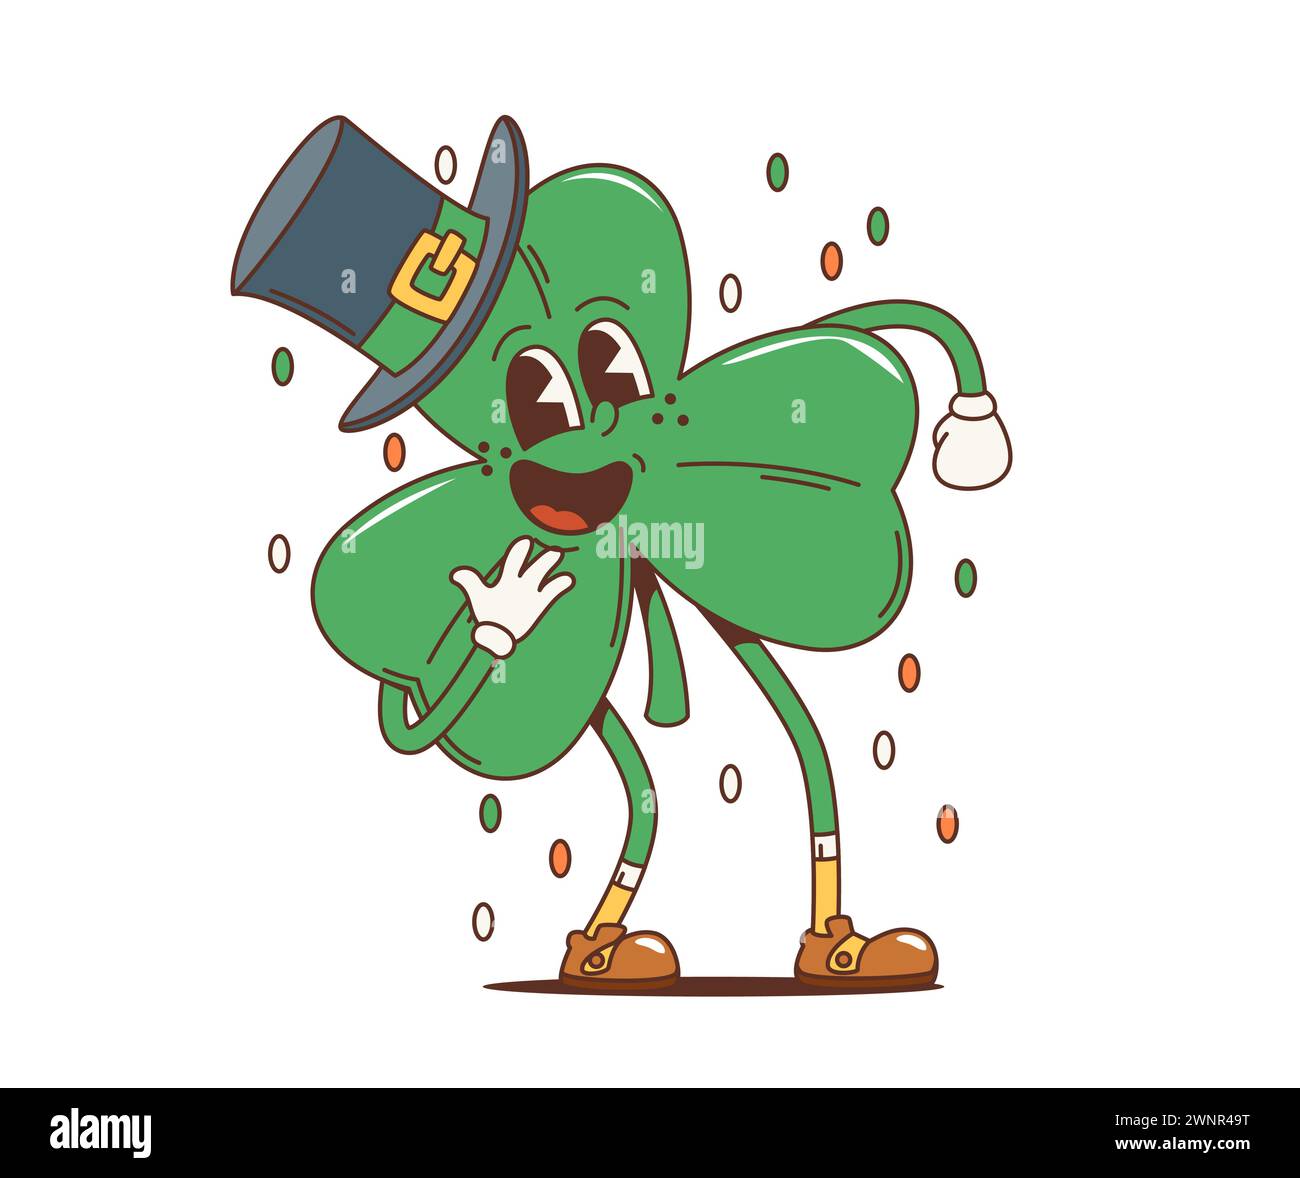 Cartoon Retro Shamrock Kleeblatt groovige Figur, saint patrick Day Feiertags-Persönlichkeit. Lustiges Vektor-Blatt mit Leprechaun-Hut und freundlichem Lächeln, das Freude und Glück für das irische Festival verbreitet Stock Vektor